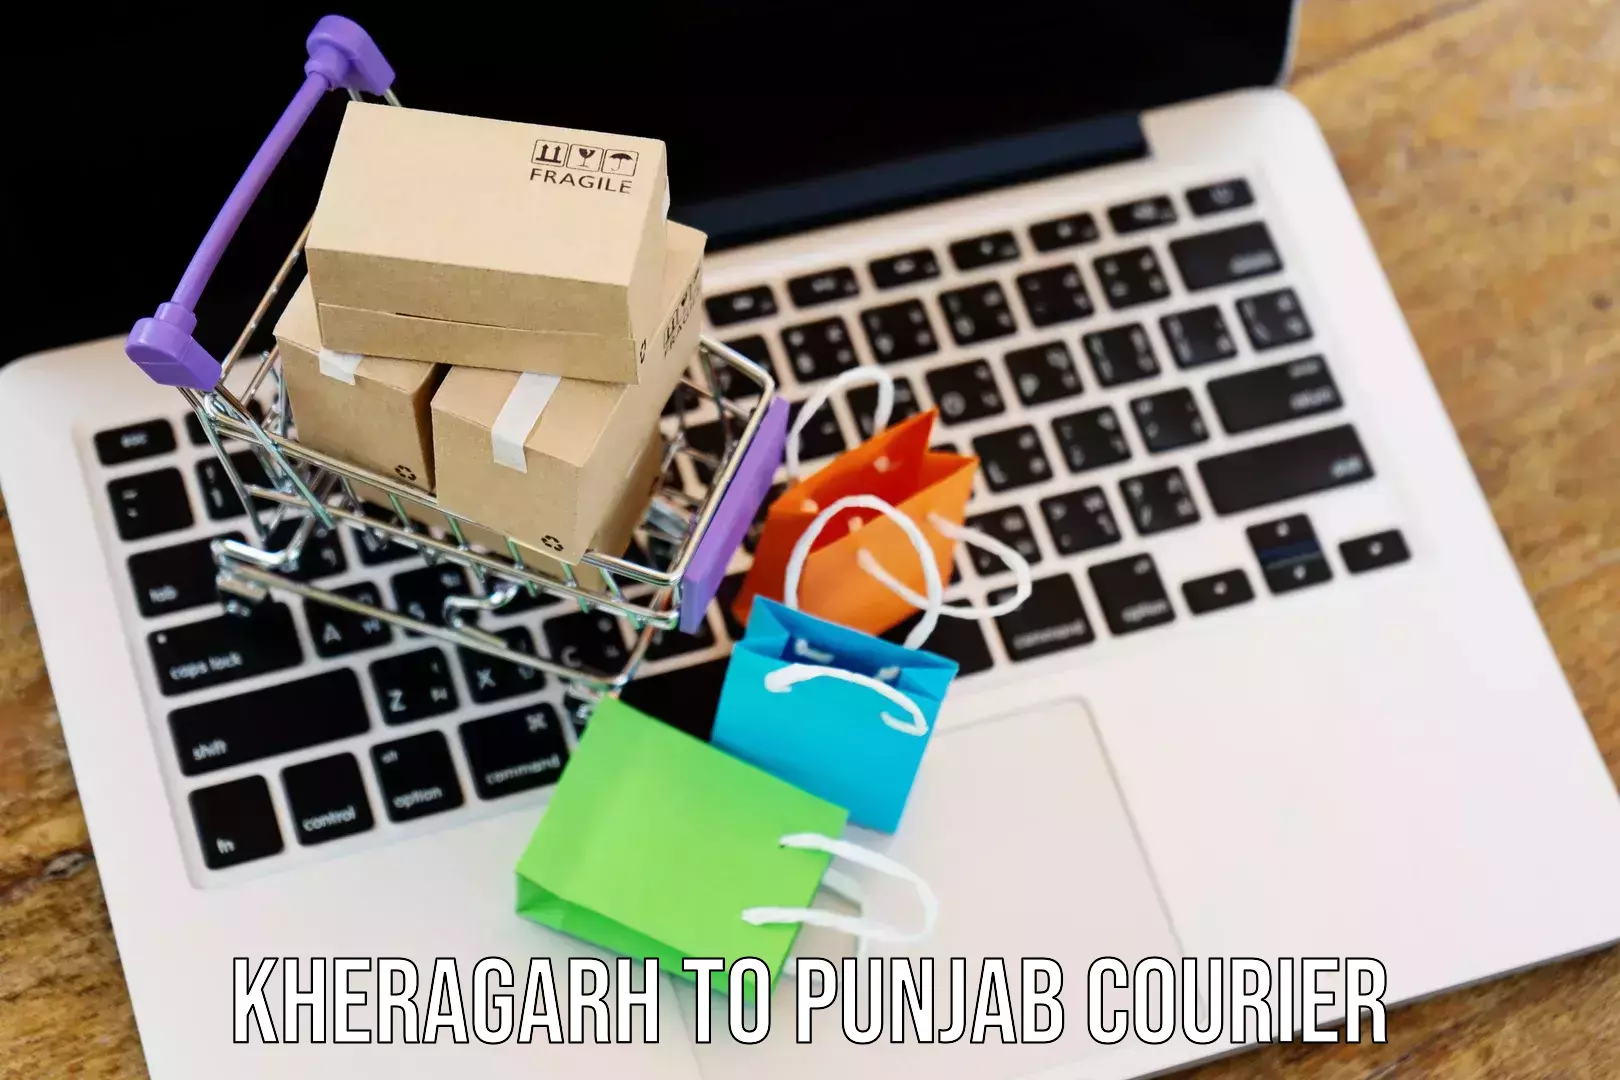 Courier app Kheragarh to Punjab